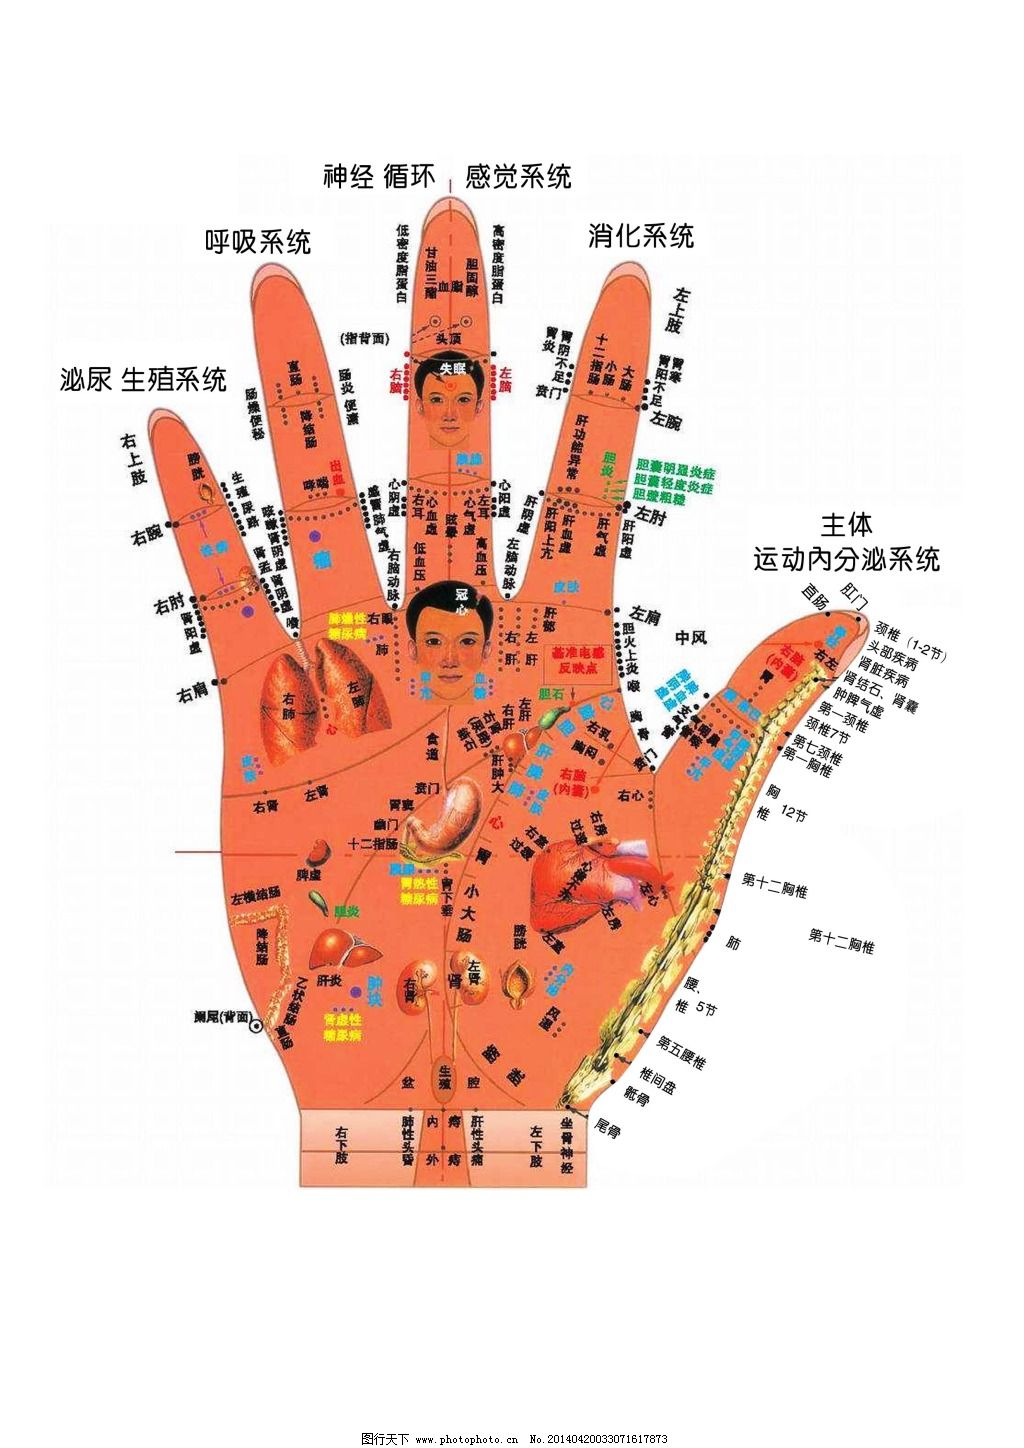 人体医疗组织器官手掌穴位示意图科普插画图片-千库网